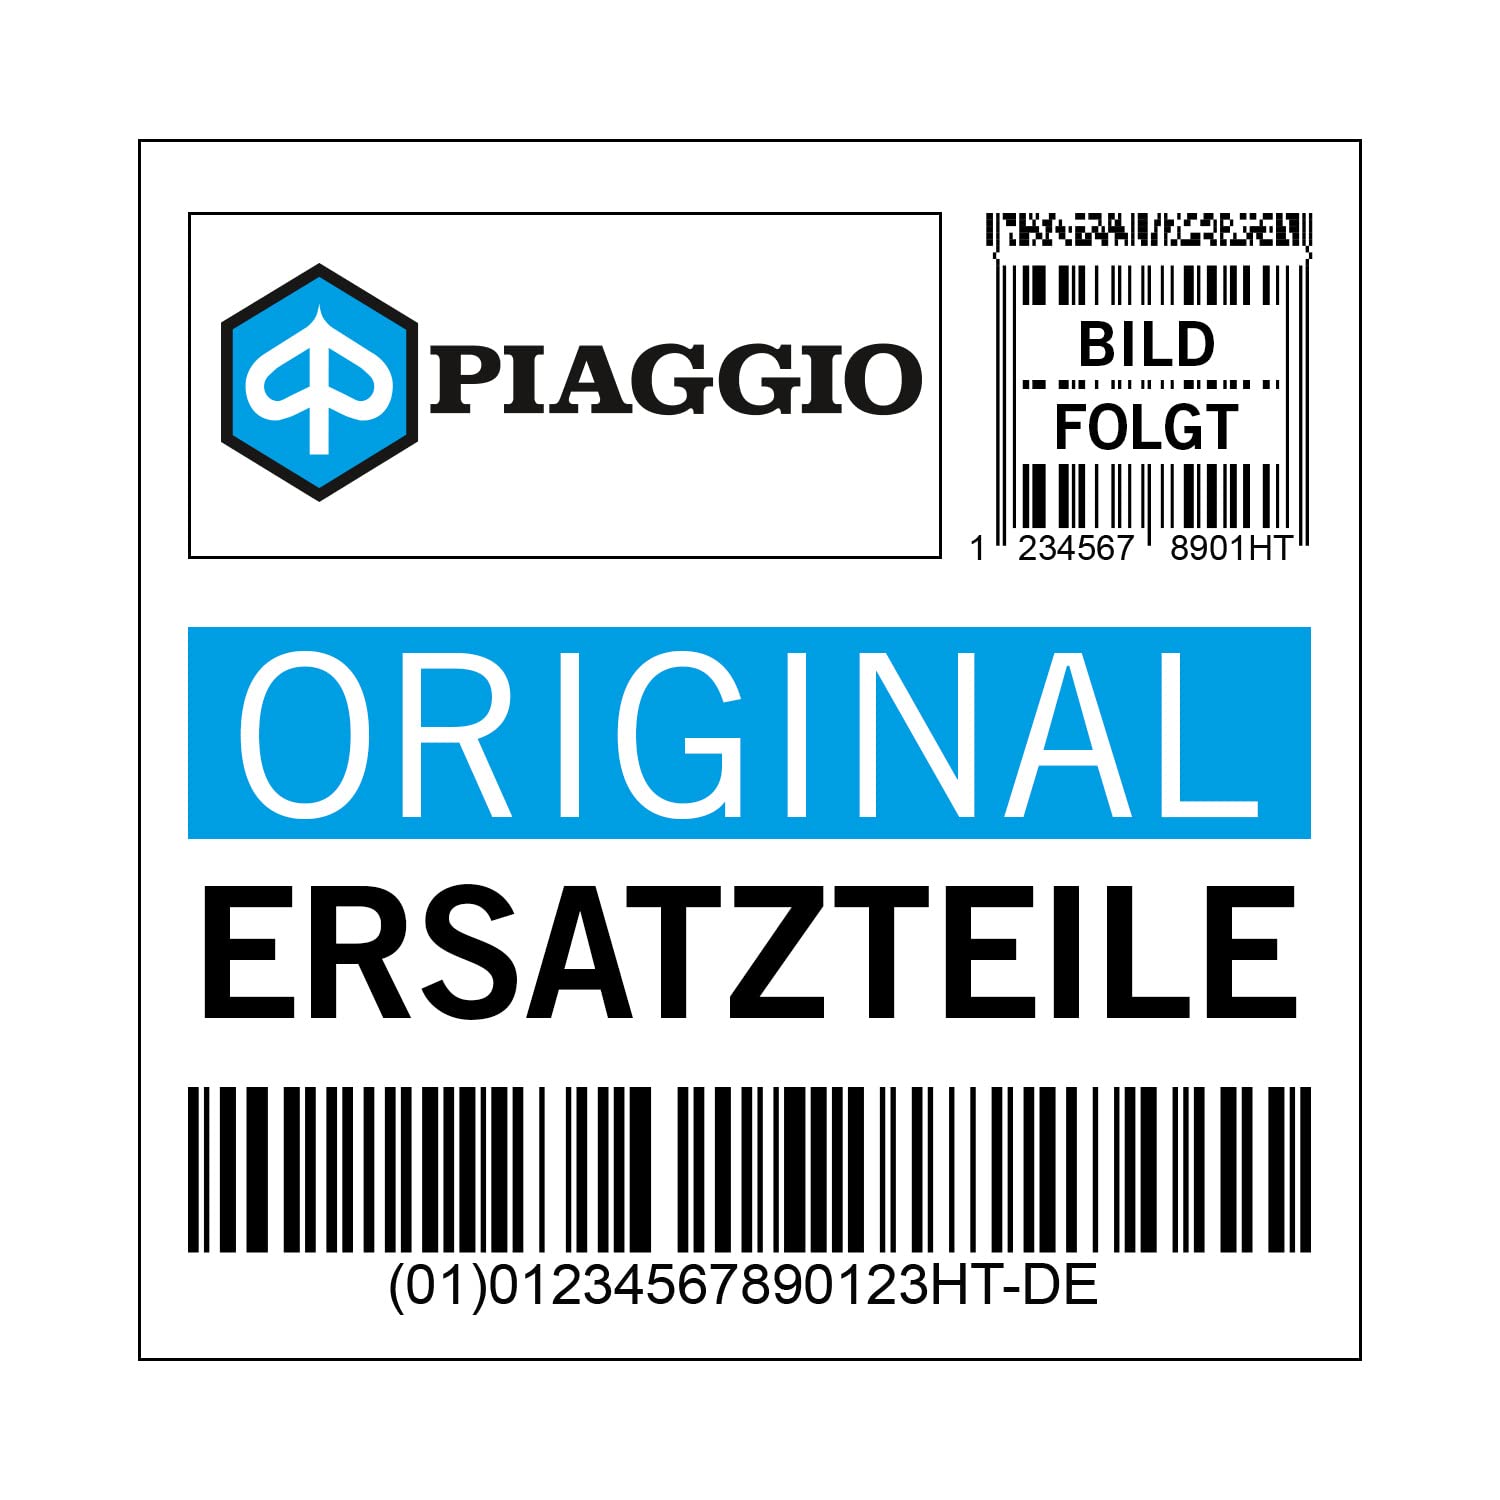 Inspektionsklappe Piaggio Servicedeckel, schwarz, 90 schwarz glänzend 094 für Sprint, 6736190090 von Maxtuned